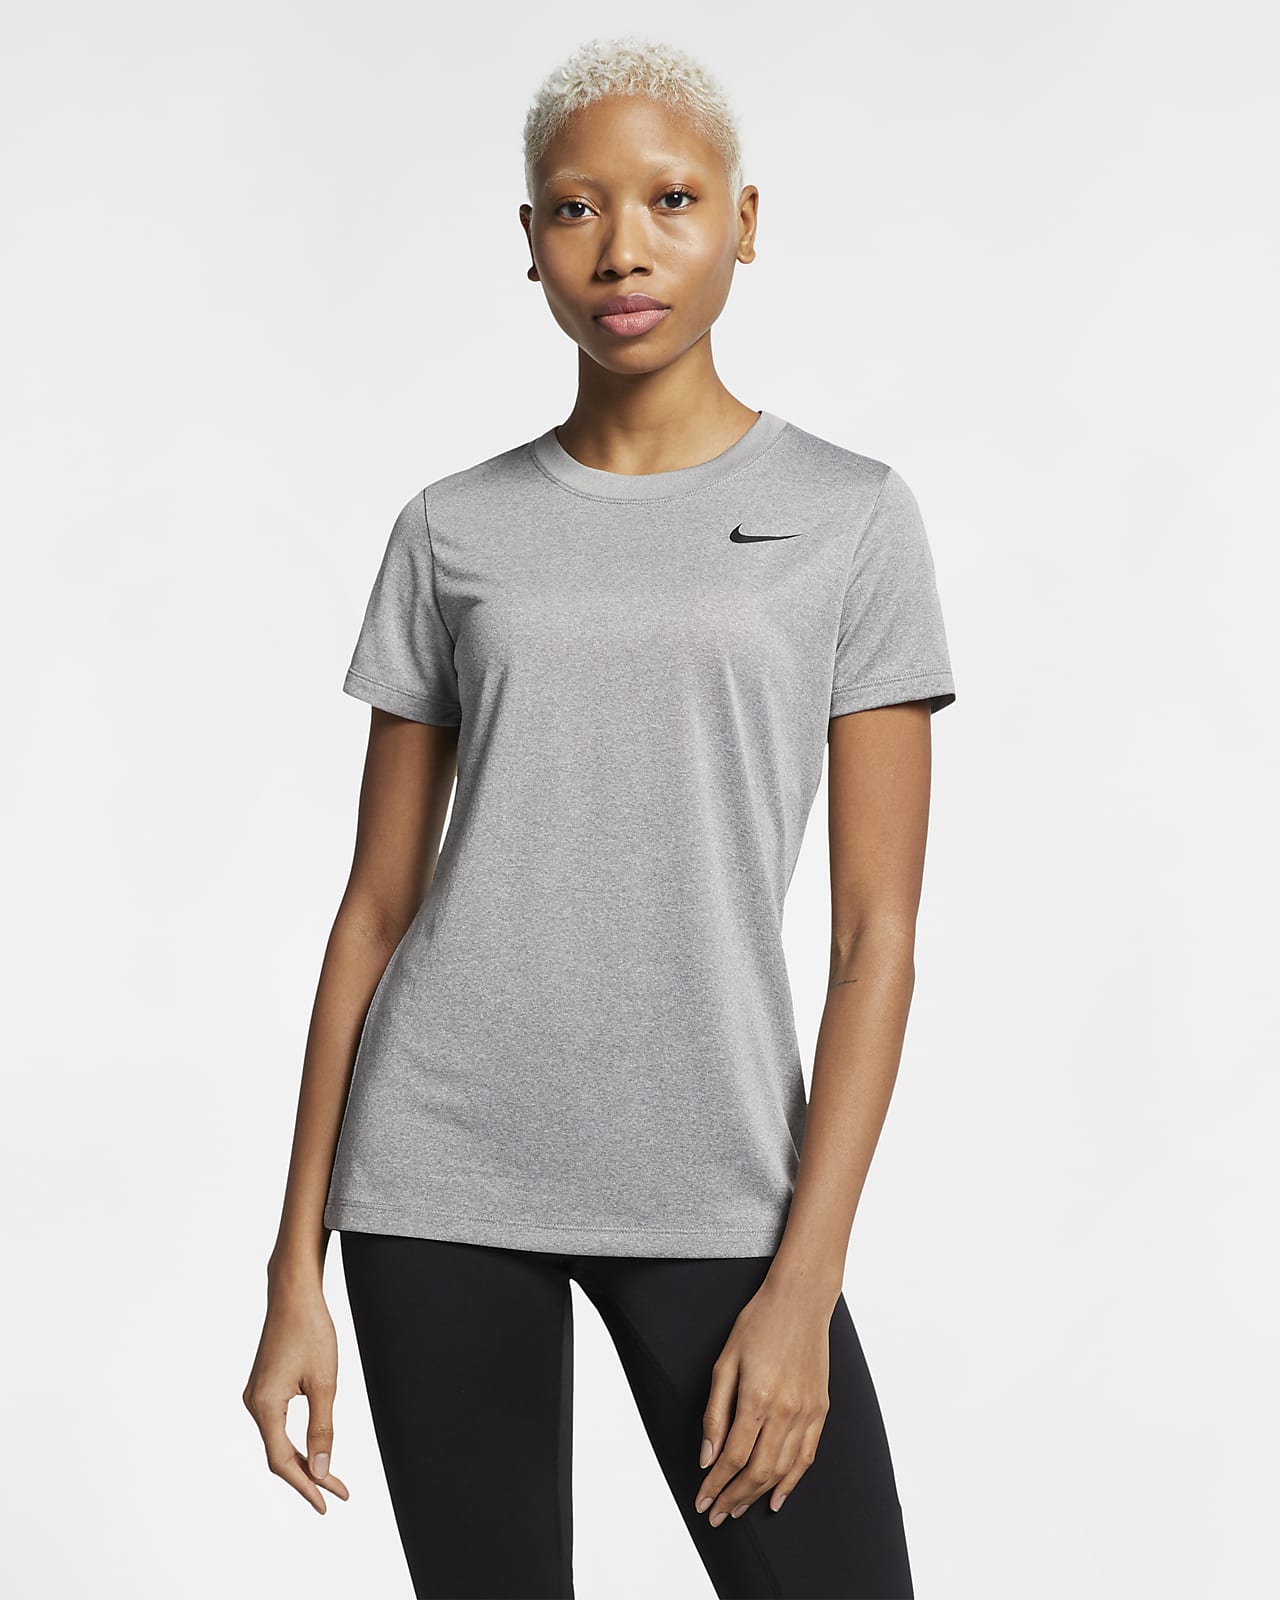 Nike Legend Women's T-Shirt. Nike.com